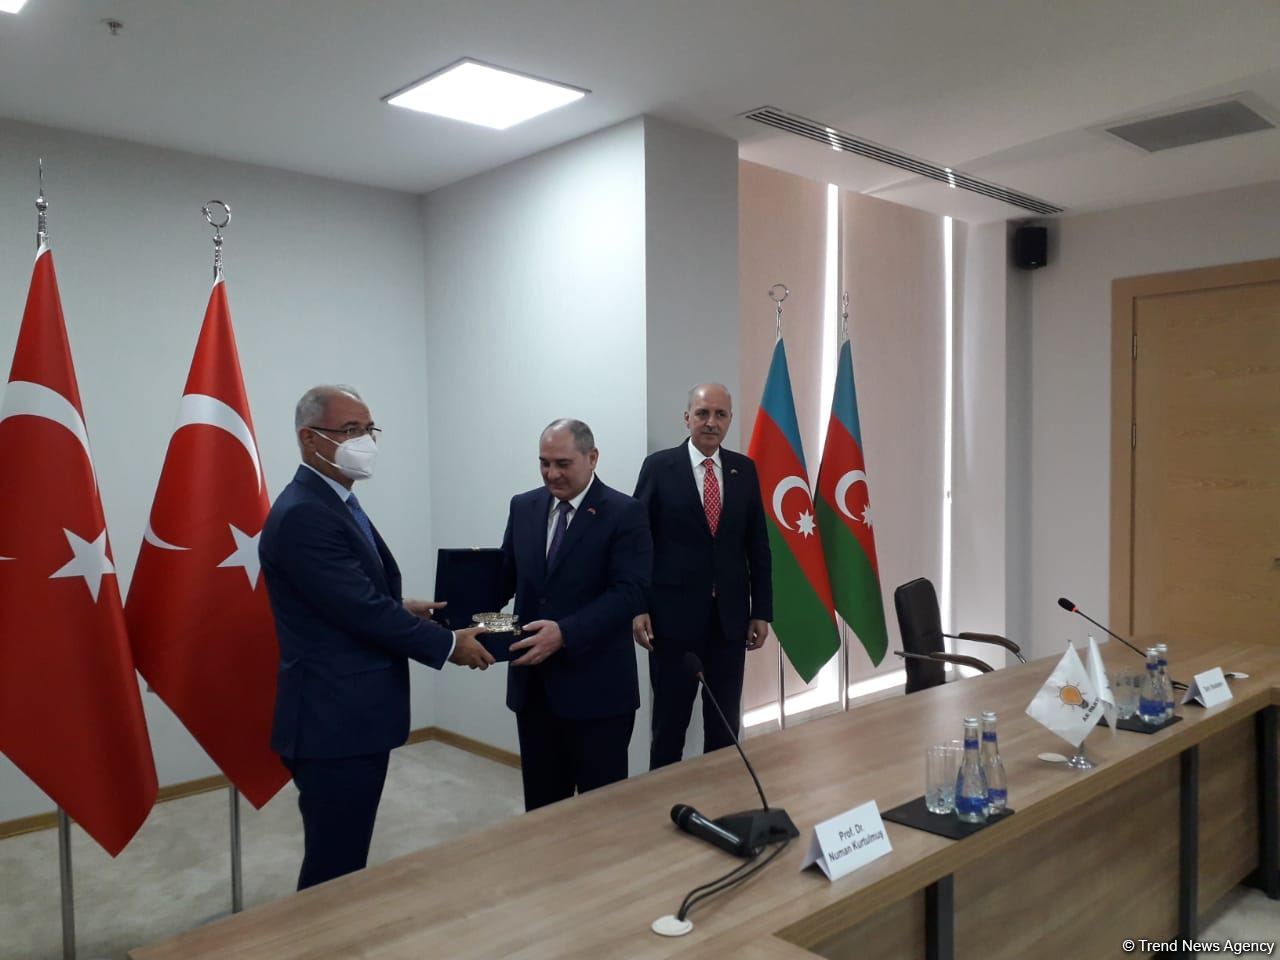 Визит в Азербайджан был очень продуктивным - первый зампредседателя правящей партии Турции (ФОТО)